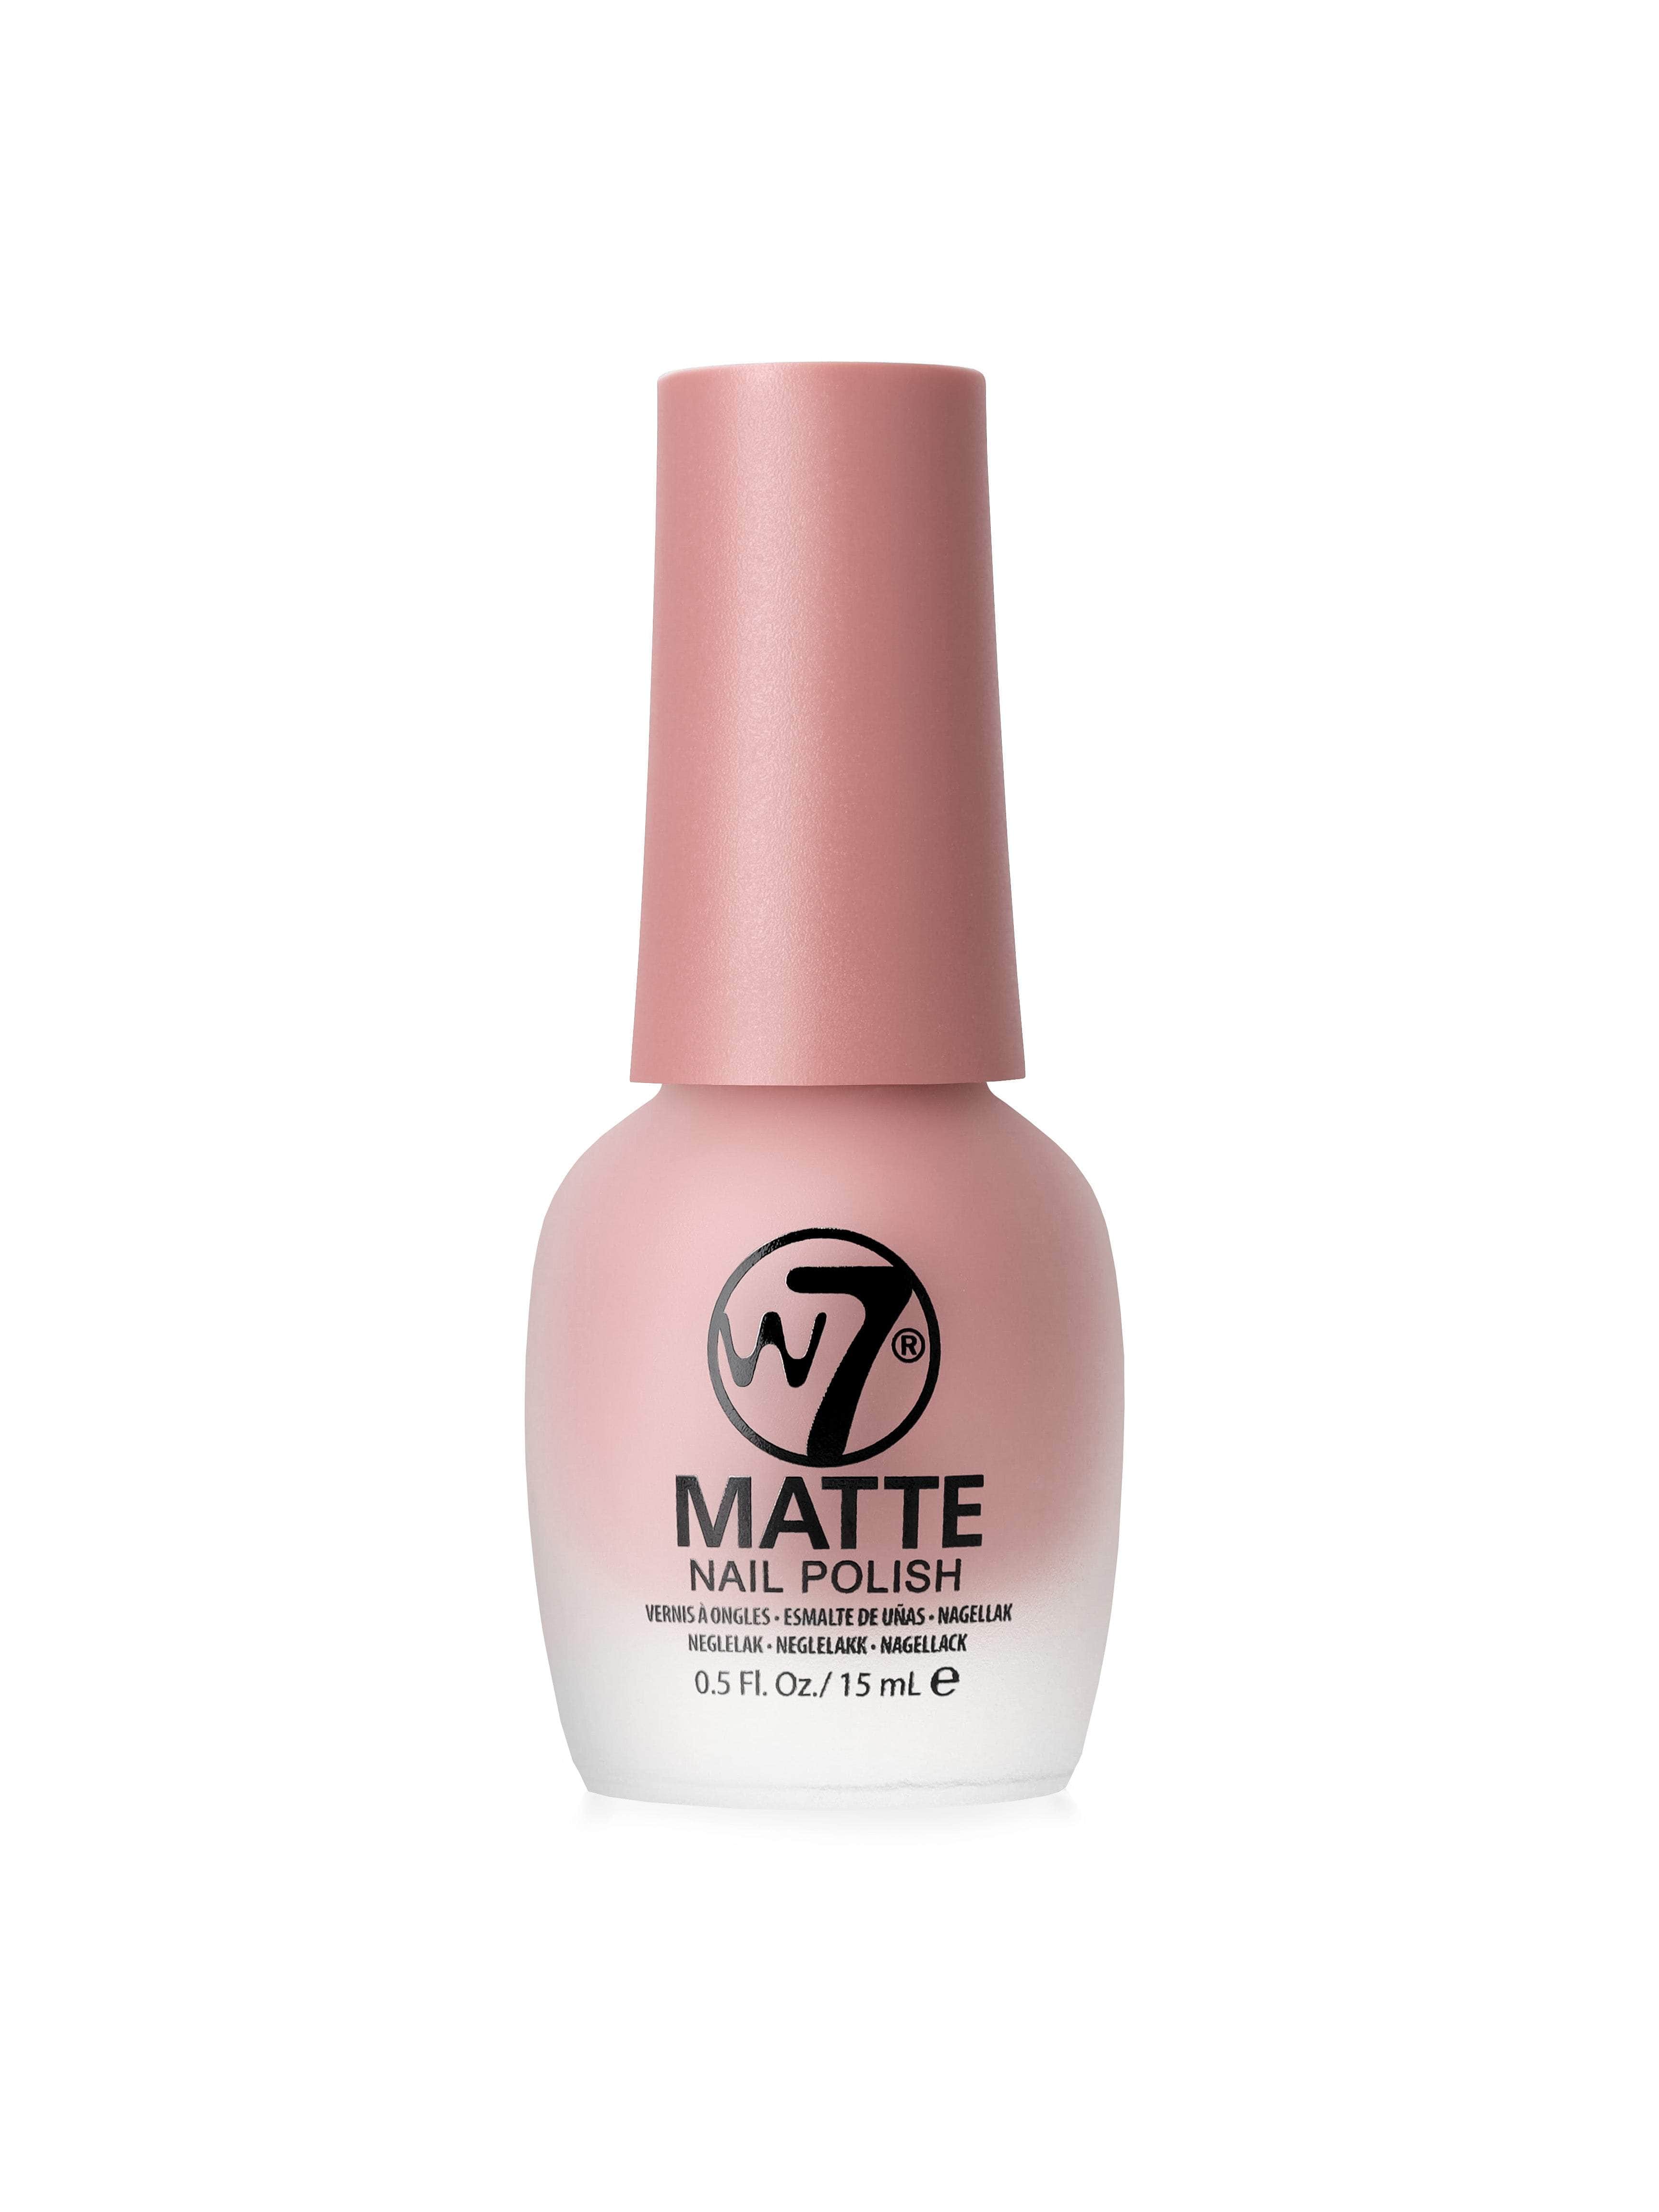 W7 Matte Nail Polish Range - W7 Makeup